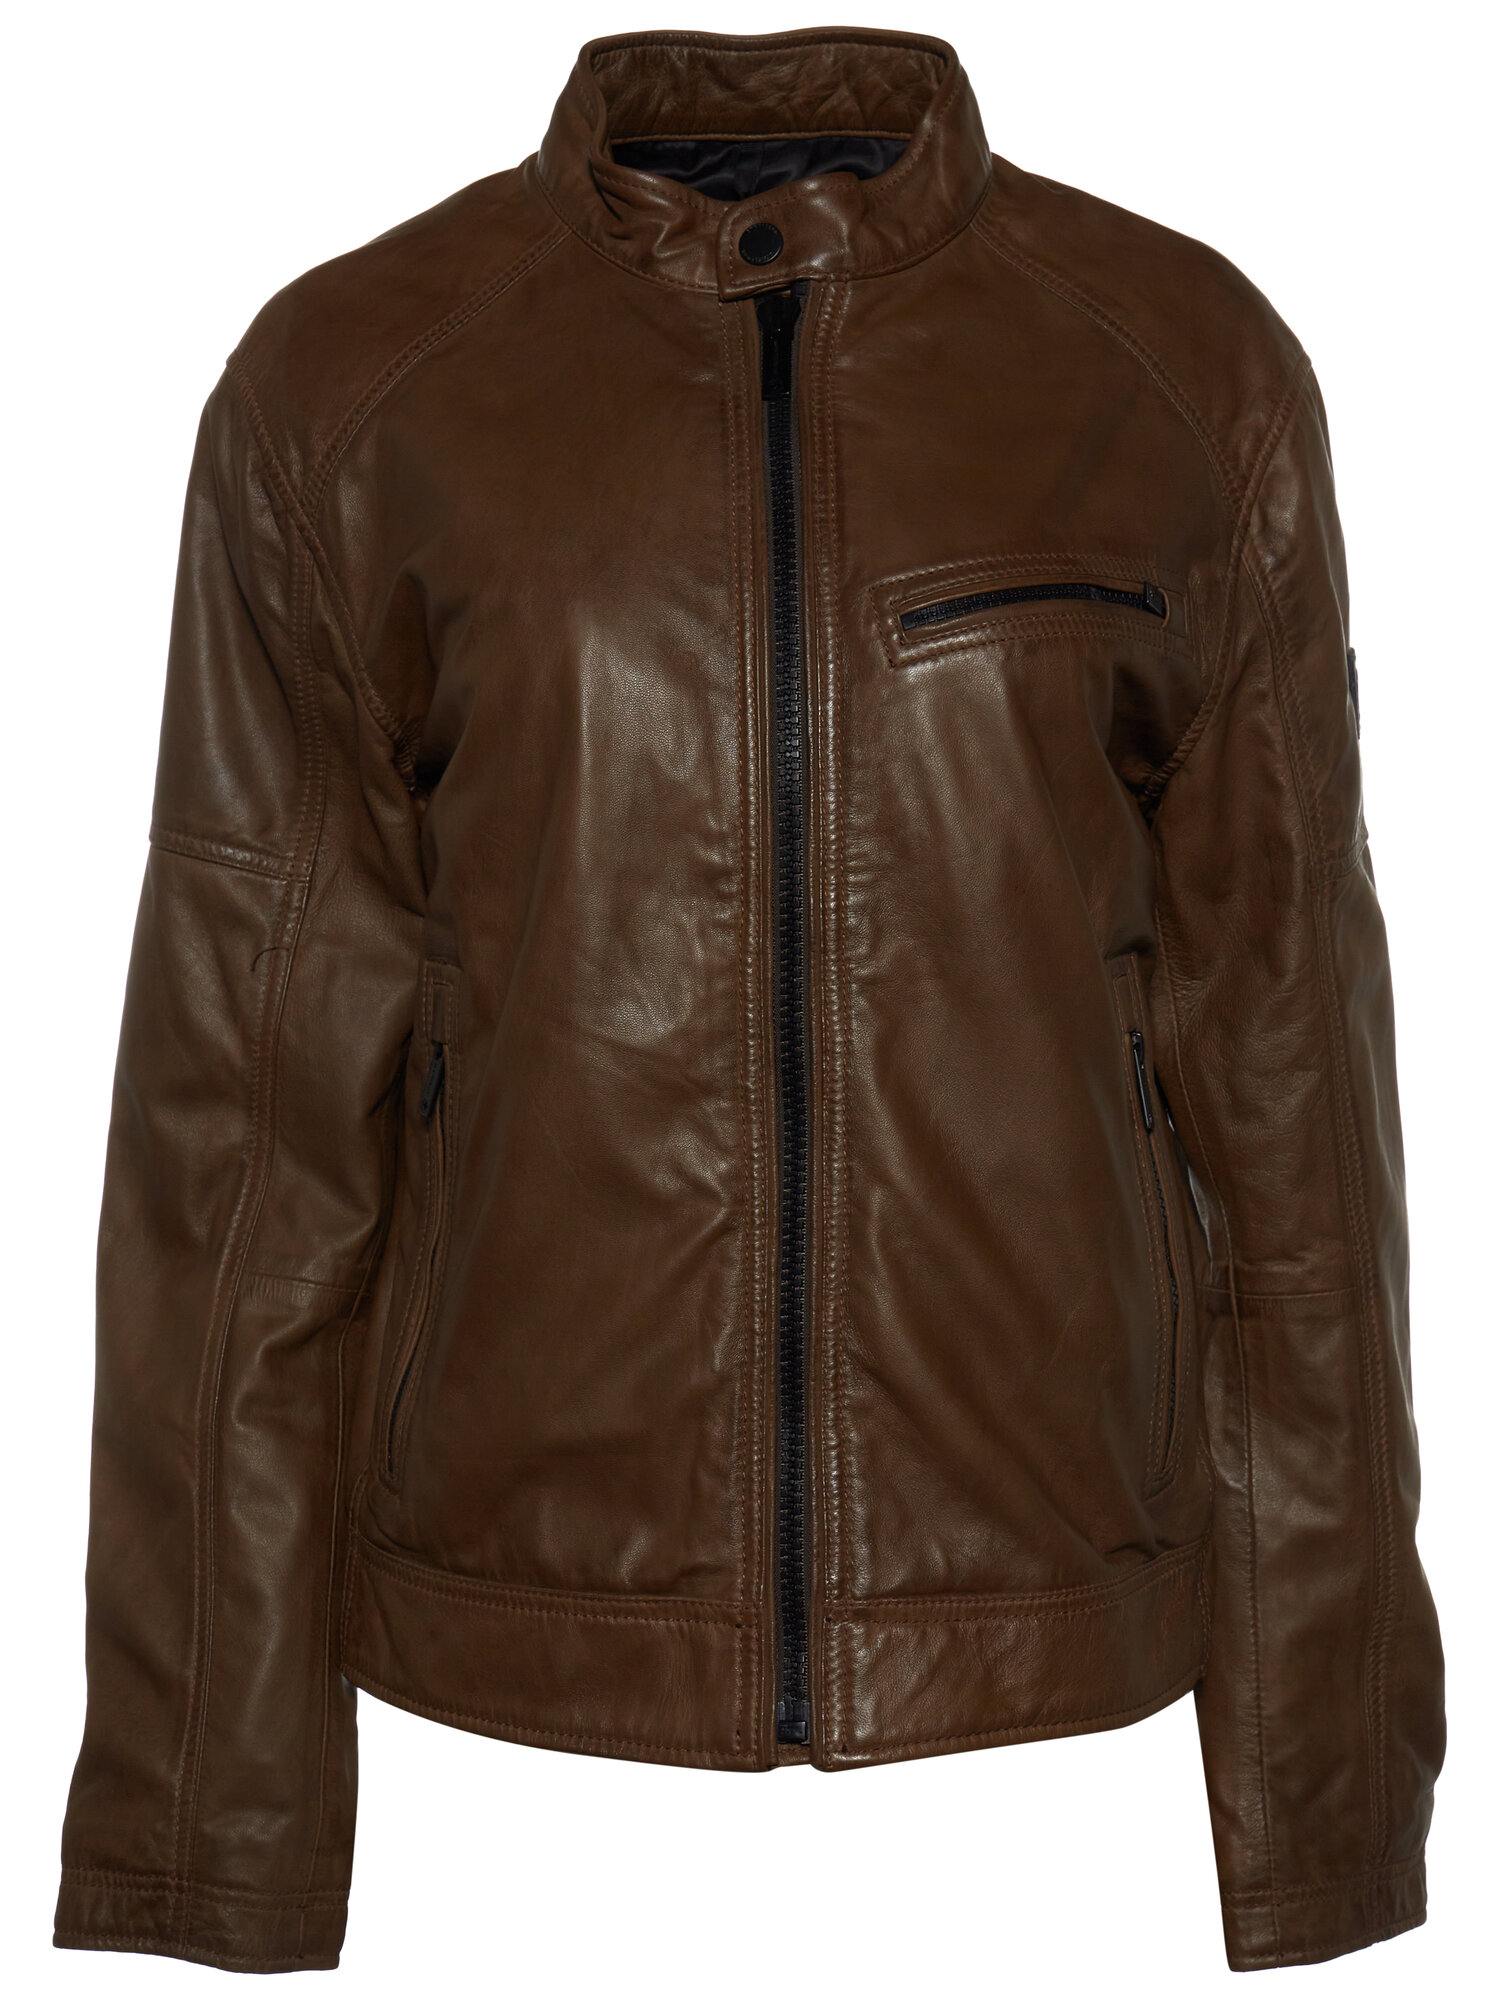 Кожаная куртка Strellson Bexley-S демисезонная, без капюшона, внутренний карман, подкладка, карманы, размер 48, бежевый - фотография № 1